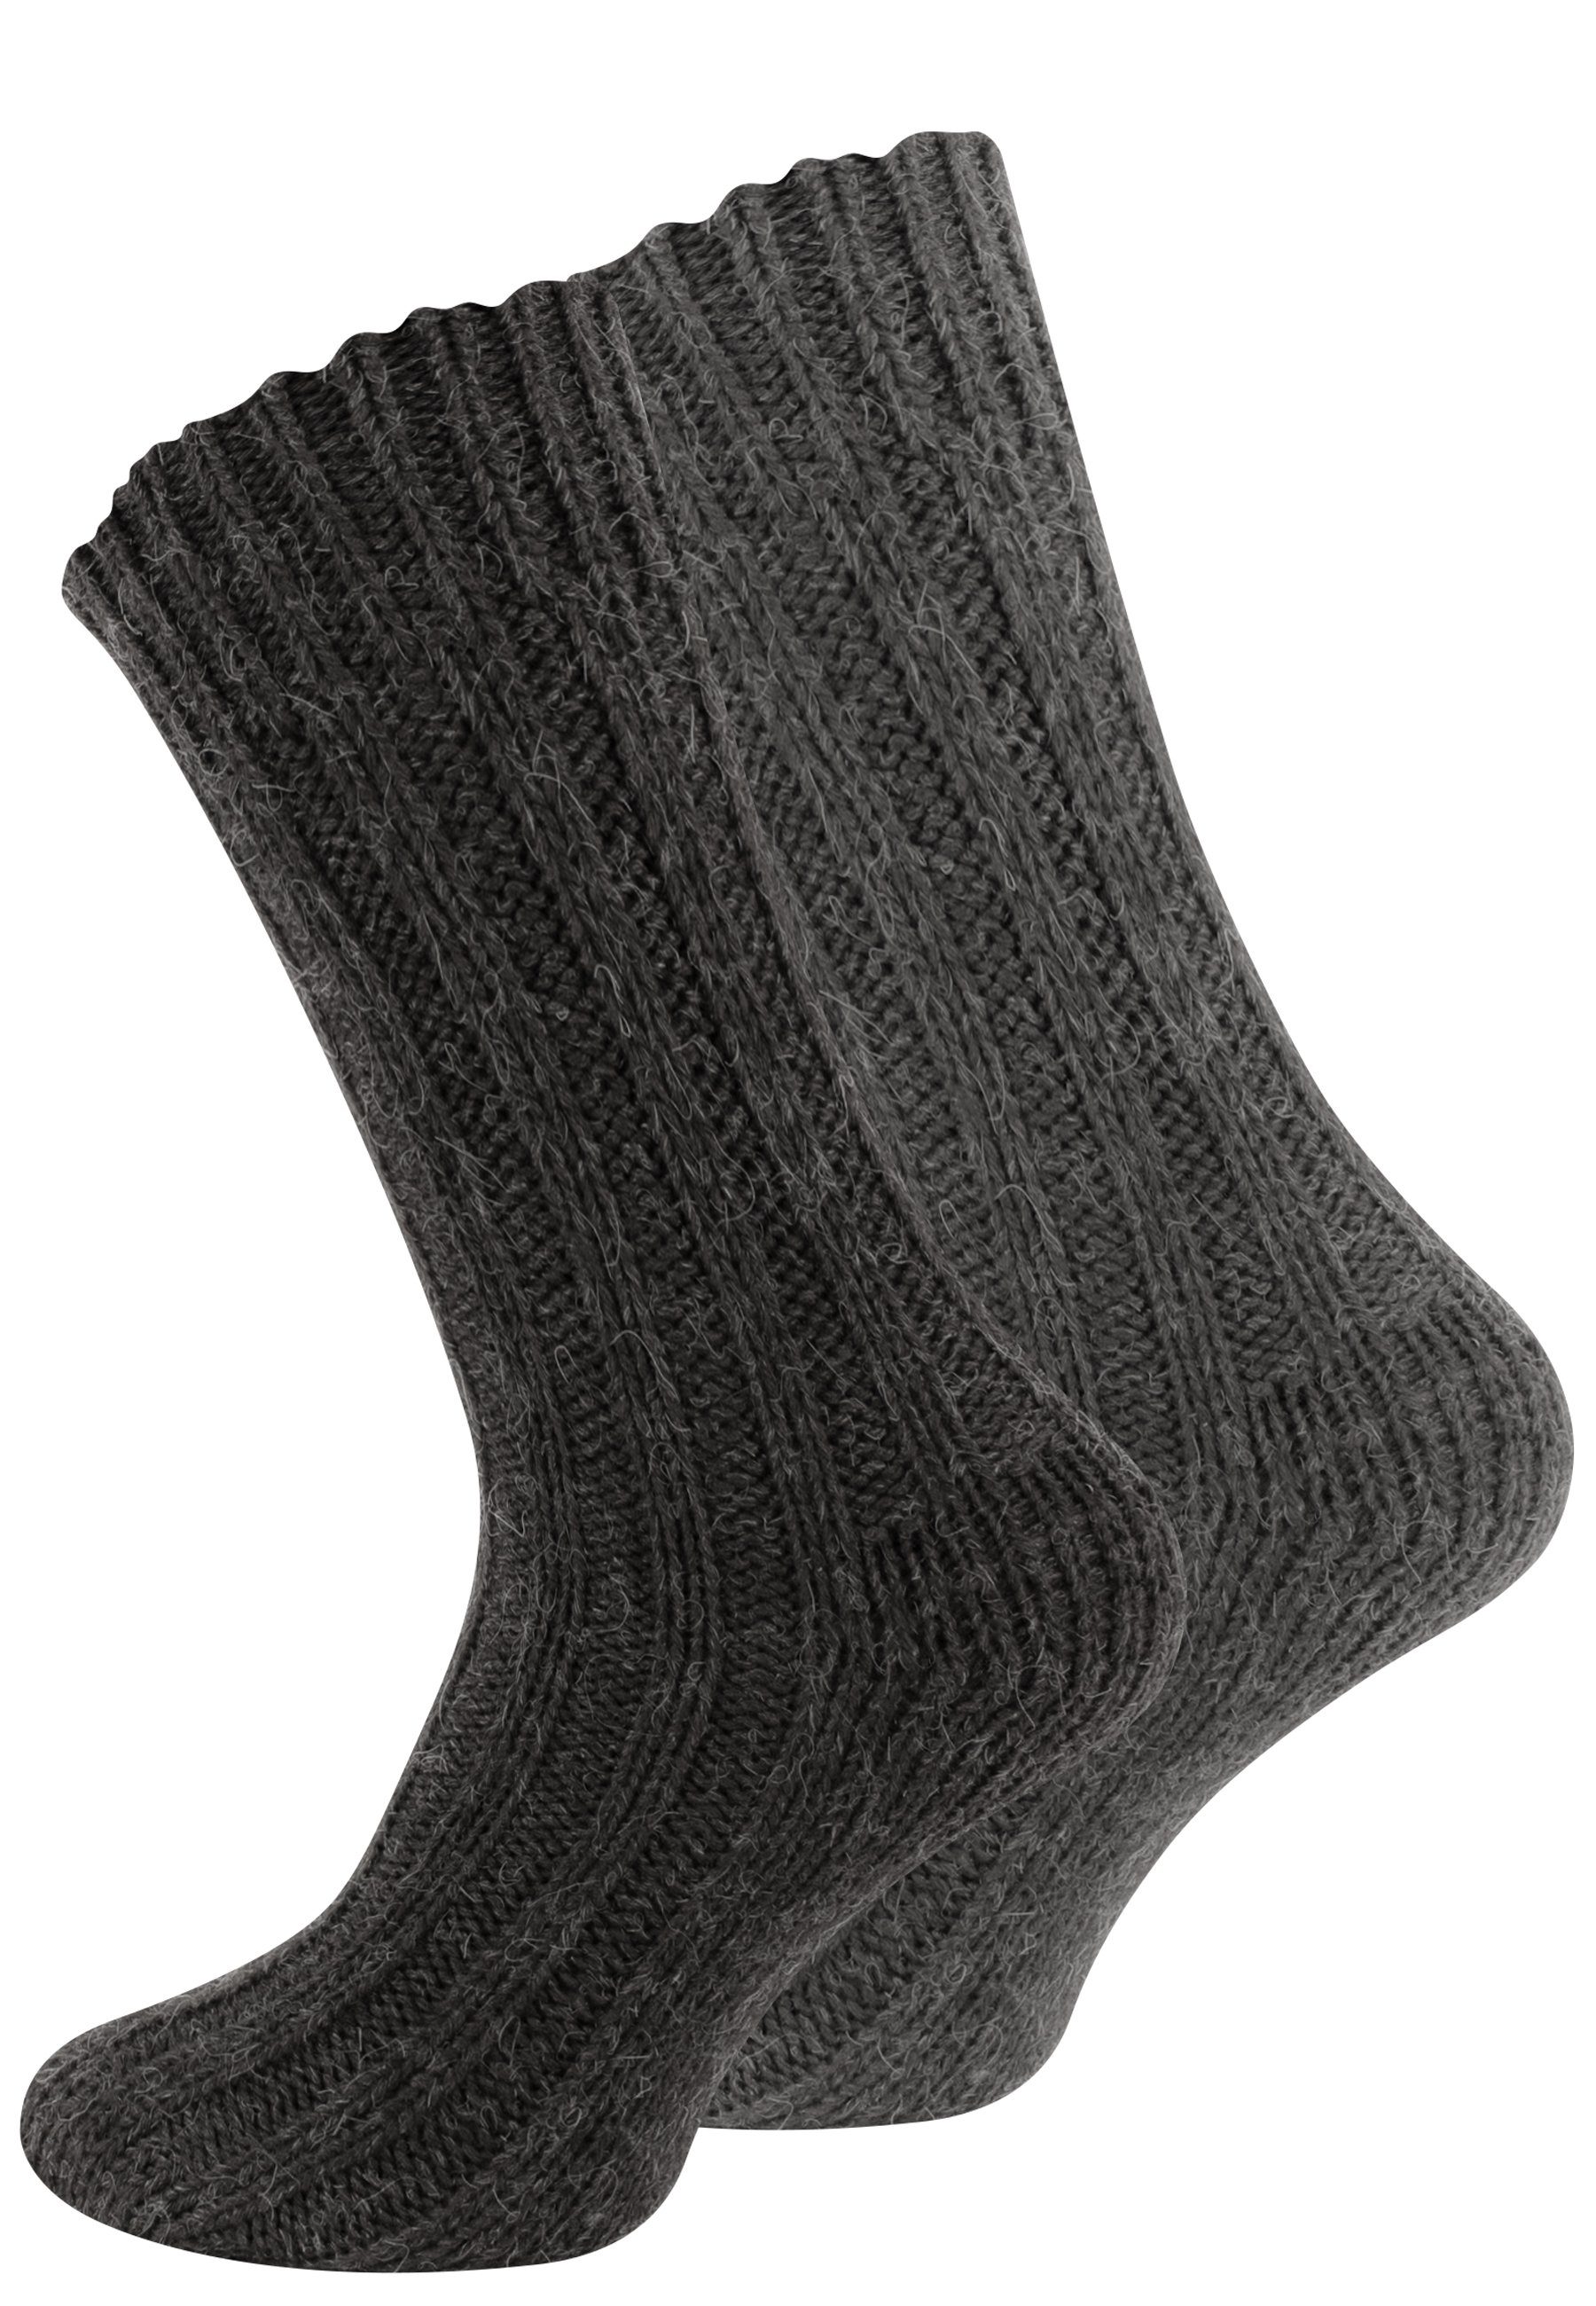 Alpakasocken Cotton vorgewaschen (4-Paar) Socken gefärbt ökologisch Grau und Unisex Prime®